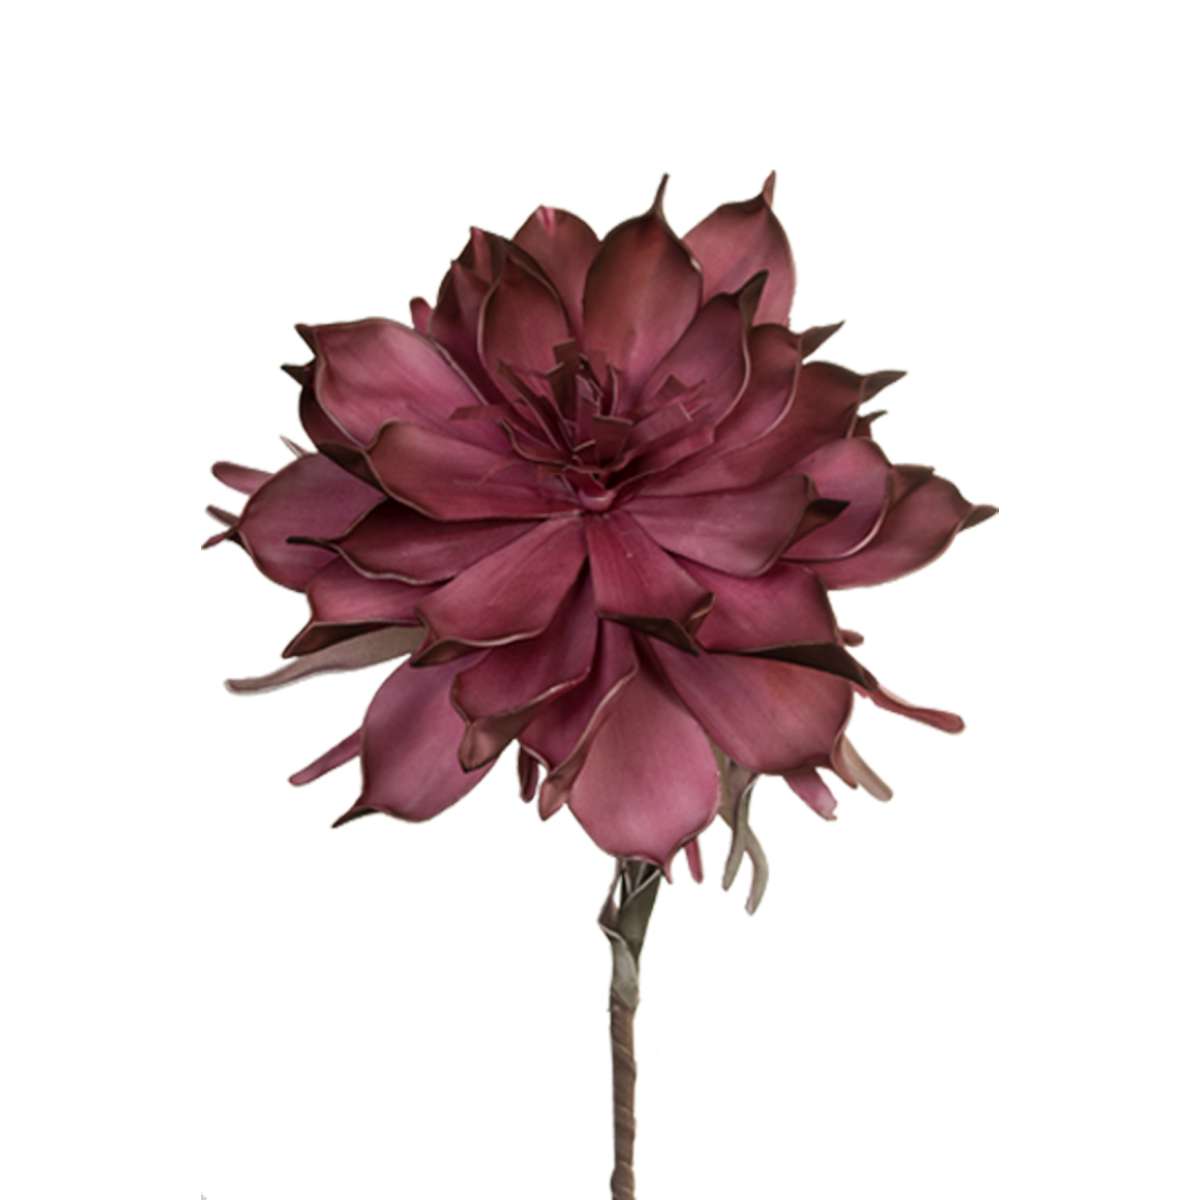 Λουλούδι Μπορντώ Art Et Lumiere 110εκ. 02134 (Σετ 6 Τεμάχια) (Χρώμα: Μπορντώ ) - Art Et Lumiere - lumiere_02134 137738